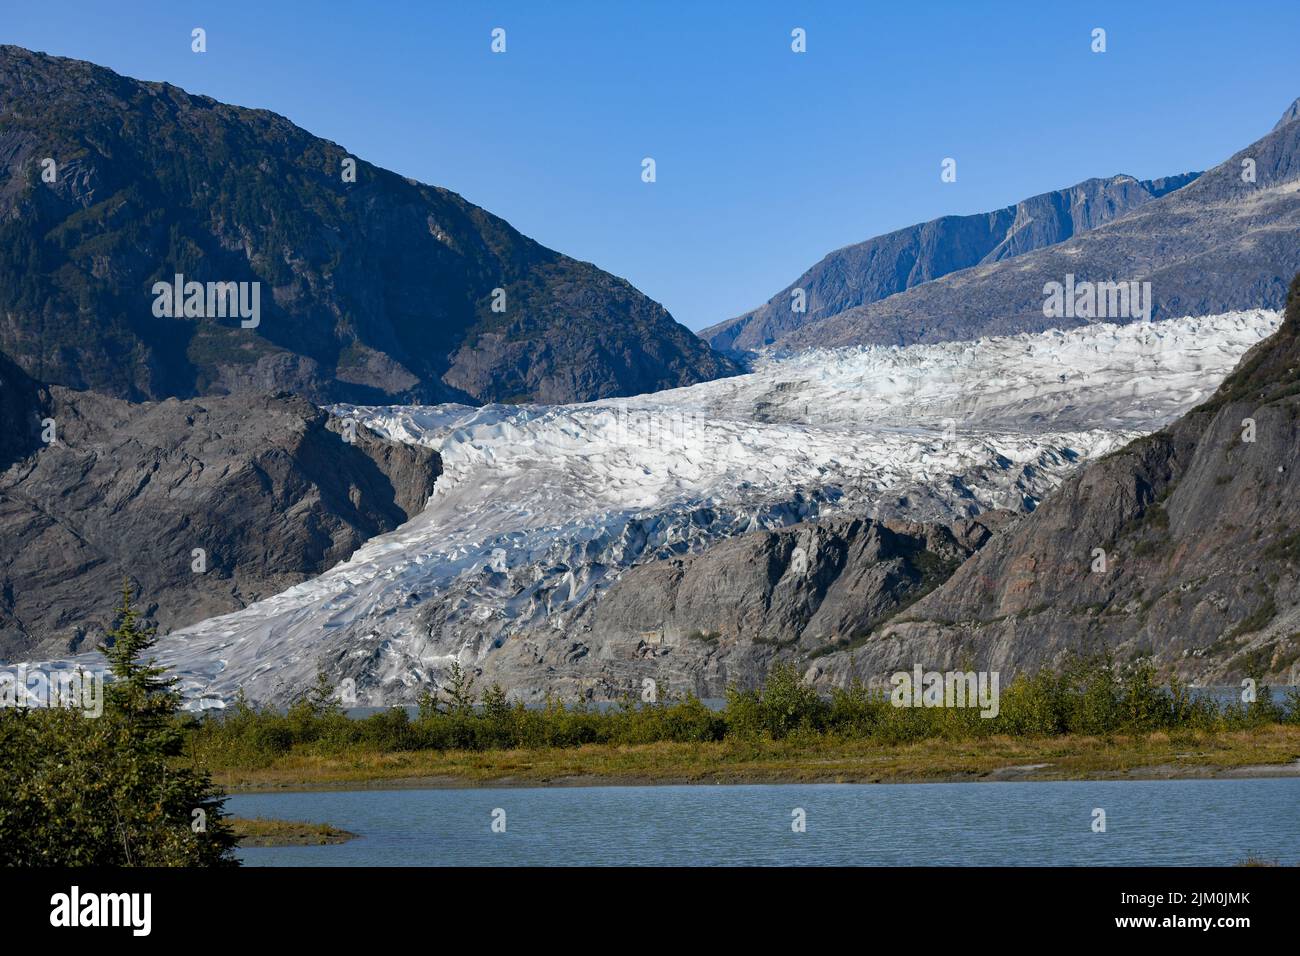 La vista delle montagne coperte di neve e ghiaccio. Foto Stock